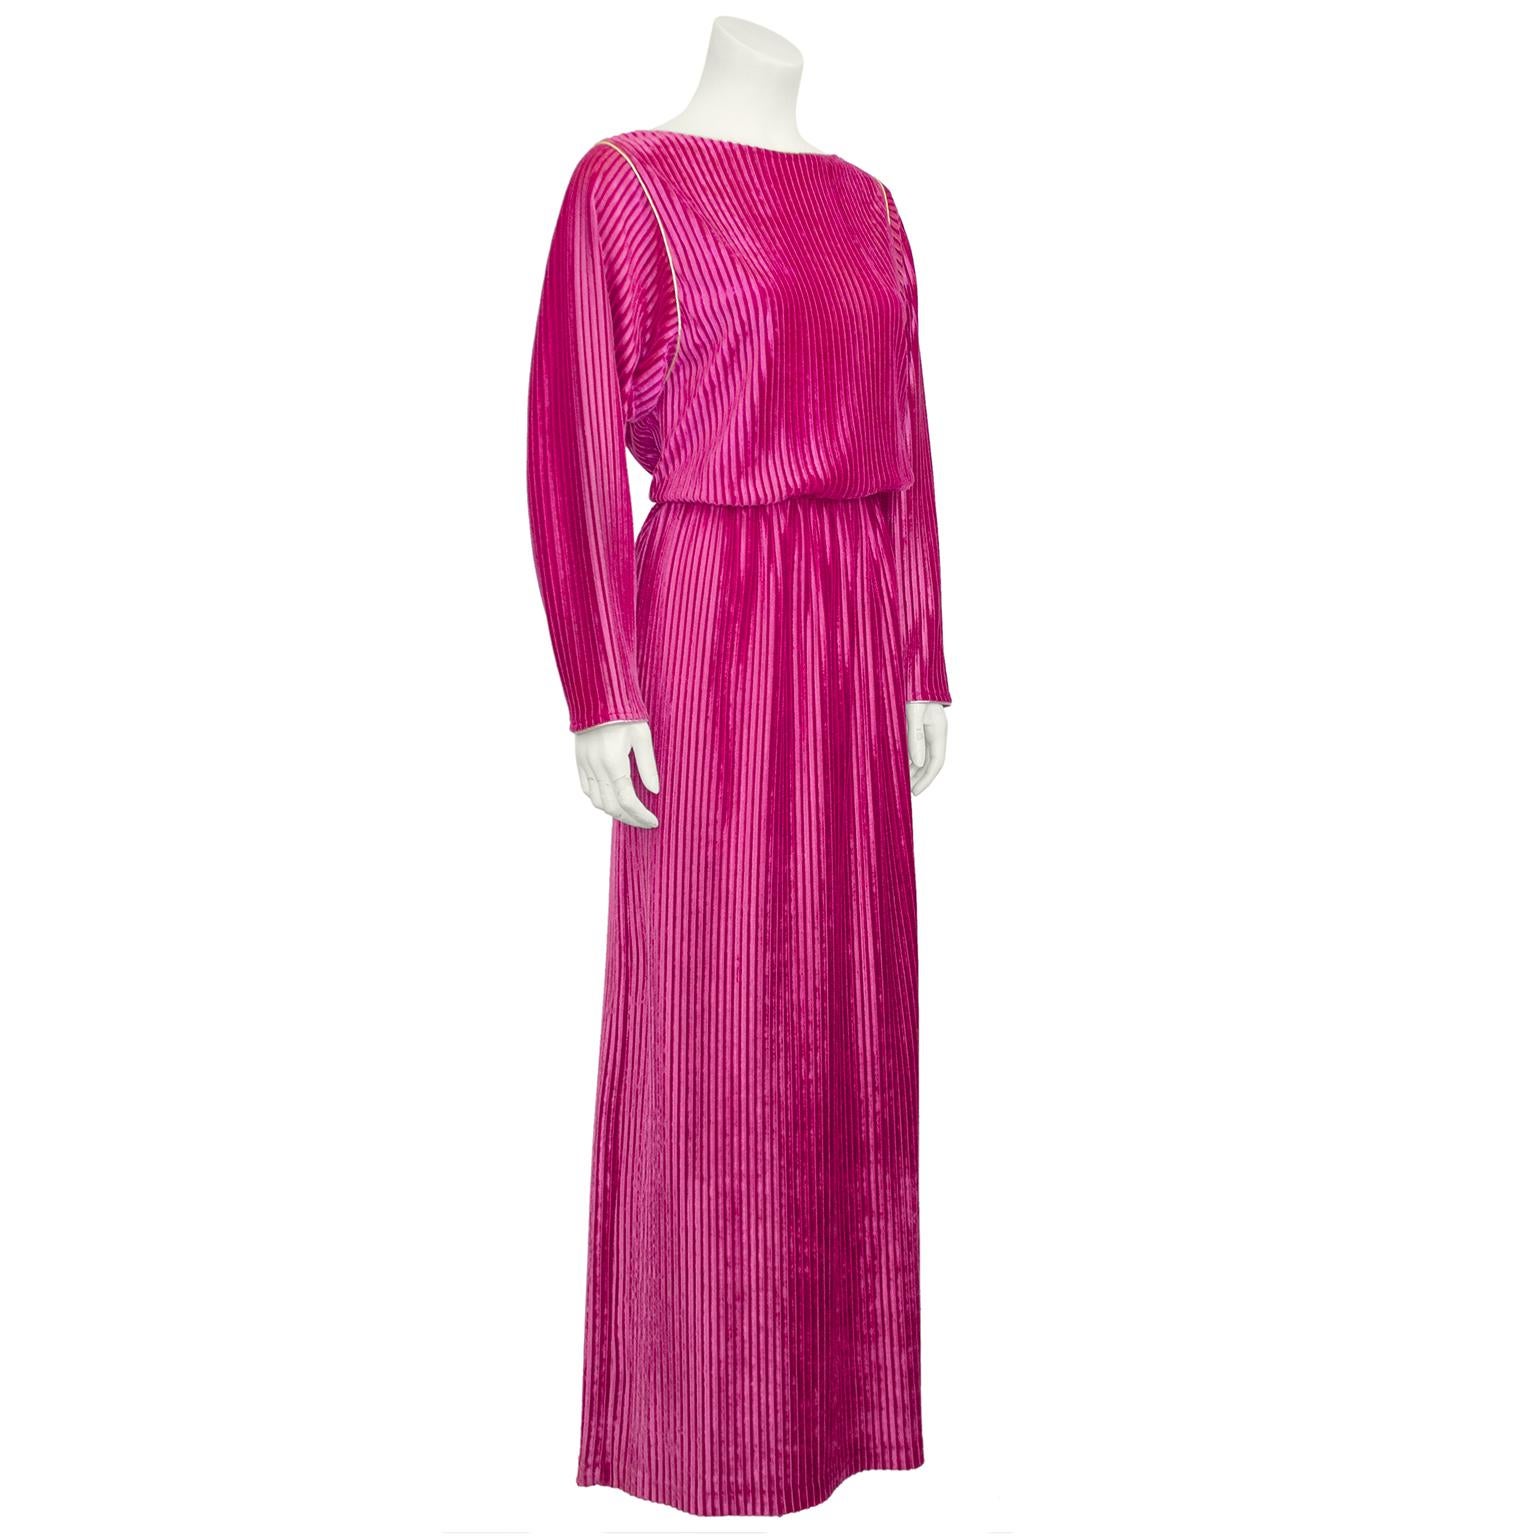 Elegantes Hostessen-Kleid von Bill Tice aus den 1980er Jahren. Herr Tice war vor allem dafür bekannt, dass er Kleider und Pyjamas entwarf, die man sowohl drinnen als auch draußen tragen konnte. Er gehörte zu einer kleinen Gruppe von Designern, die